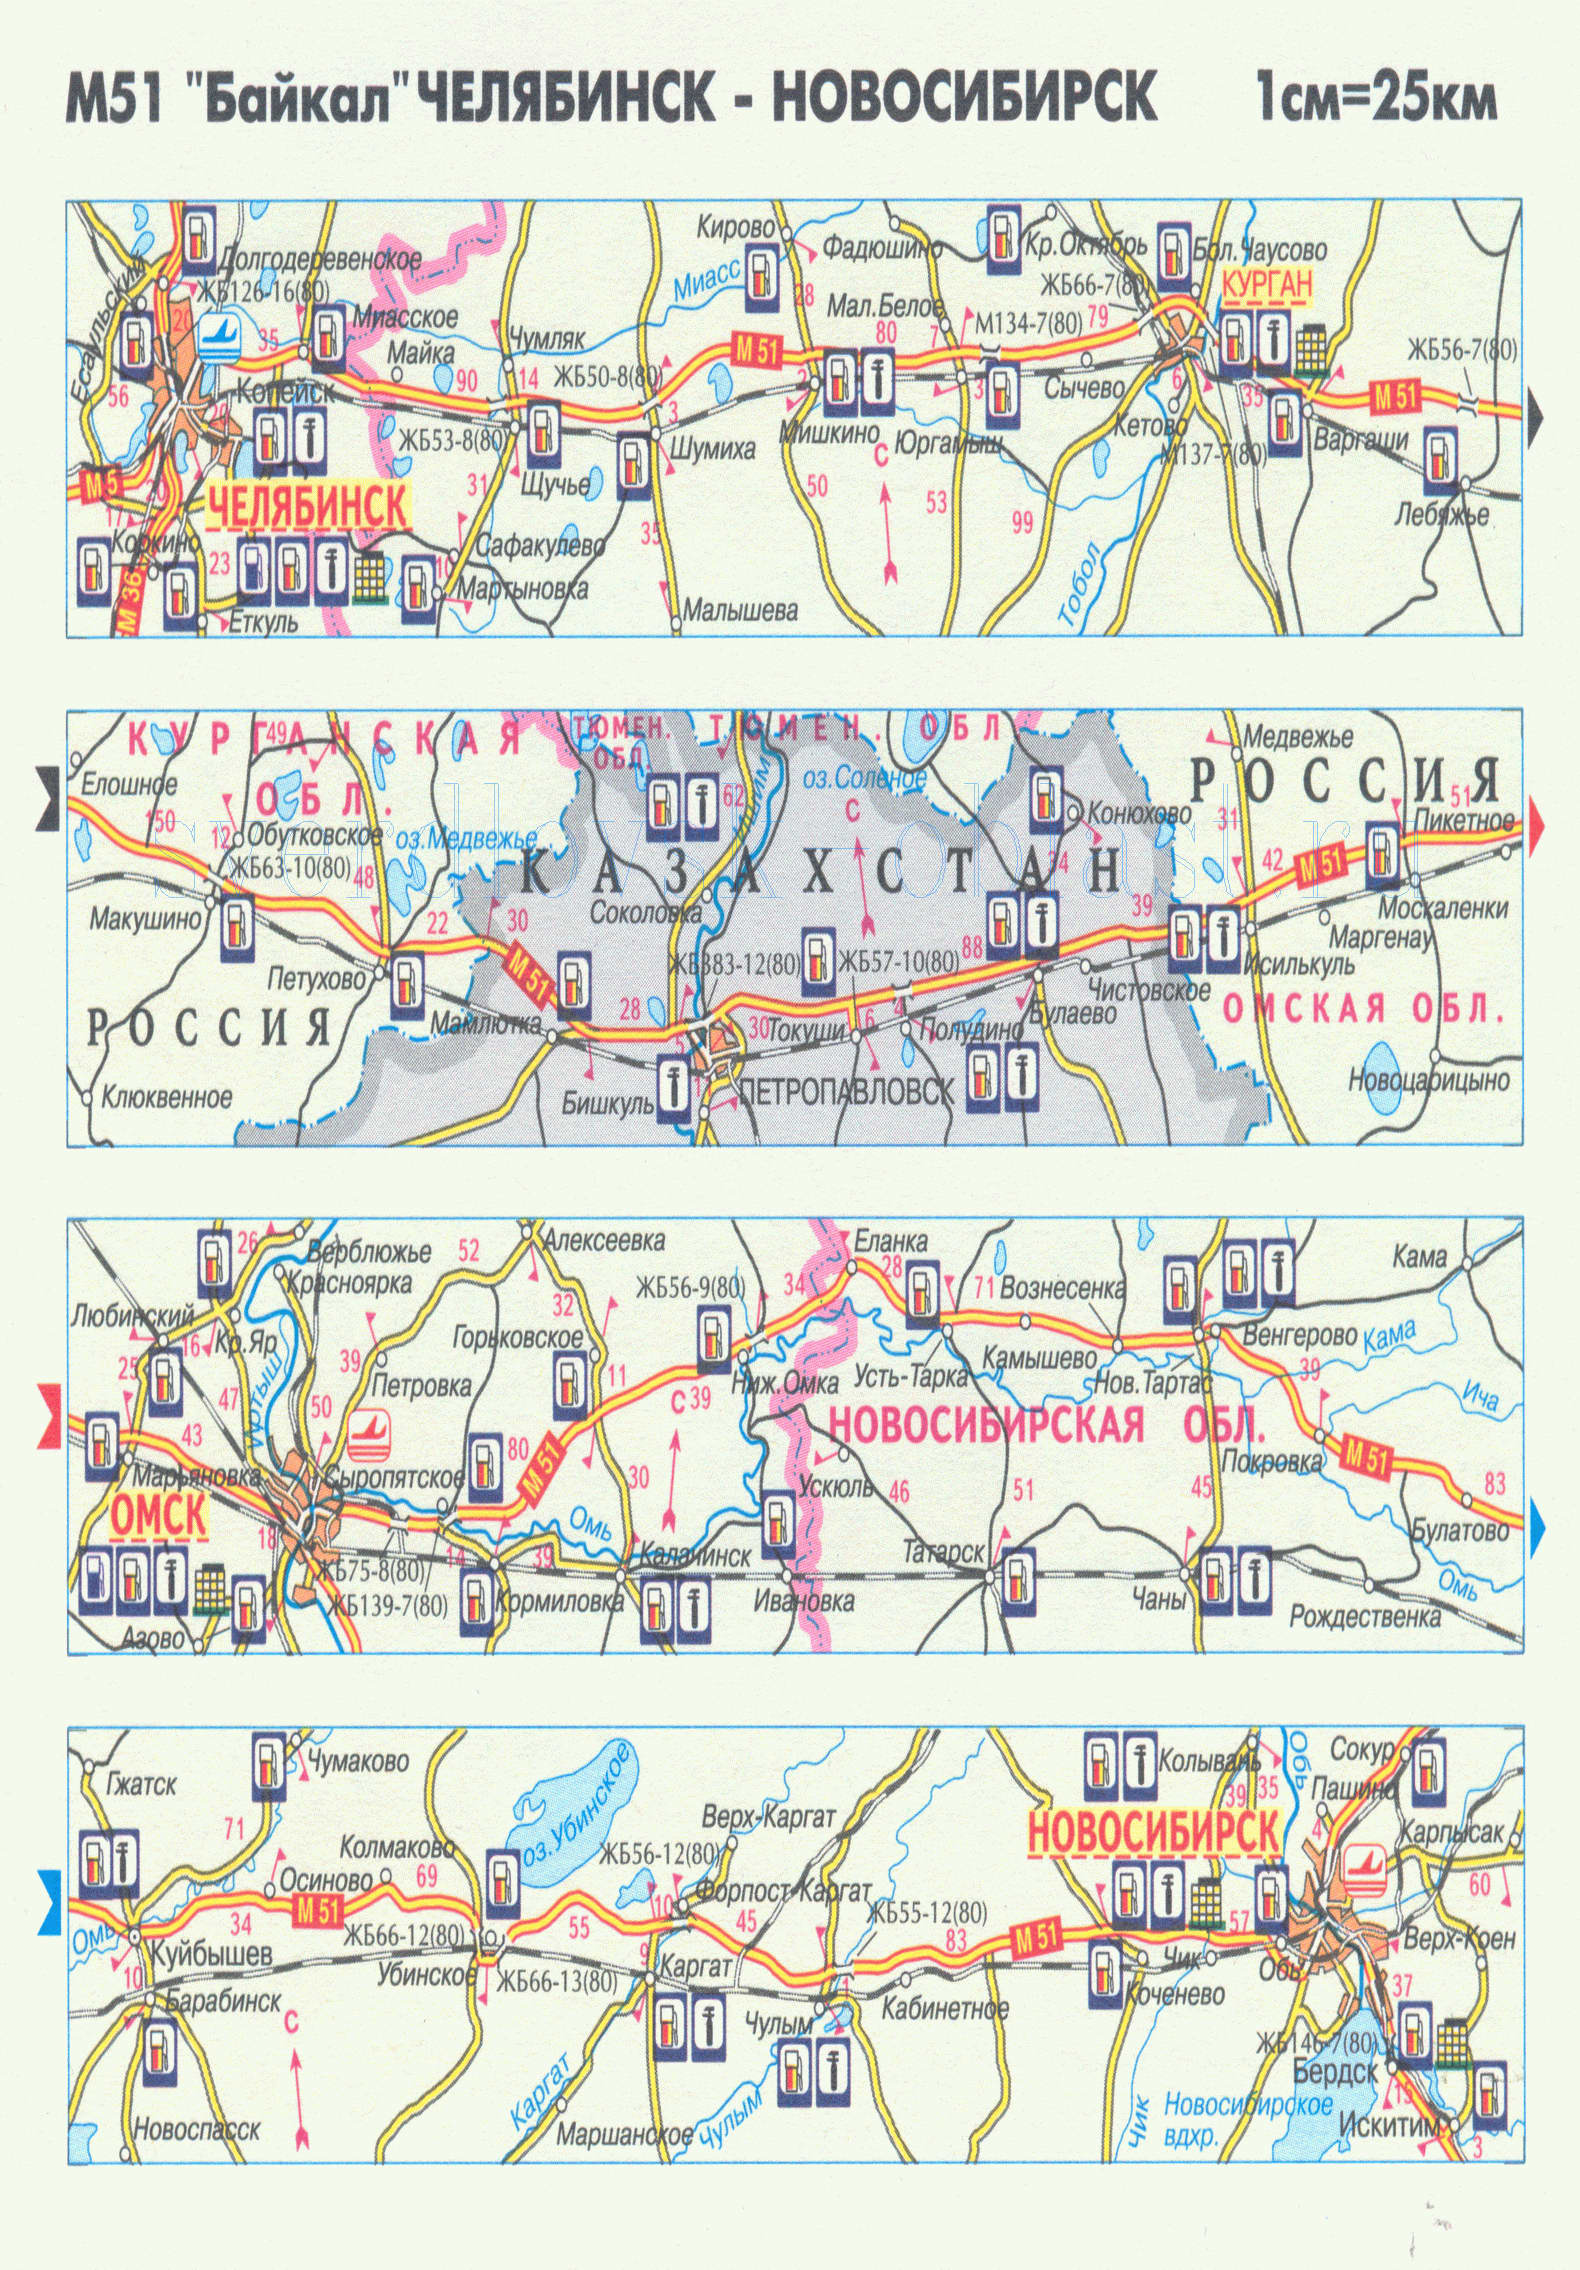 Карта авто трассы М51 'Байкал'. Карта автомобильной трассы М51 'Байкал' Челябинск-Новосибирск, A0 - 